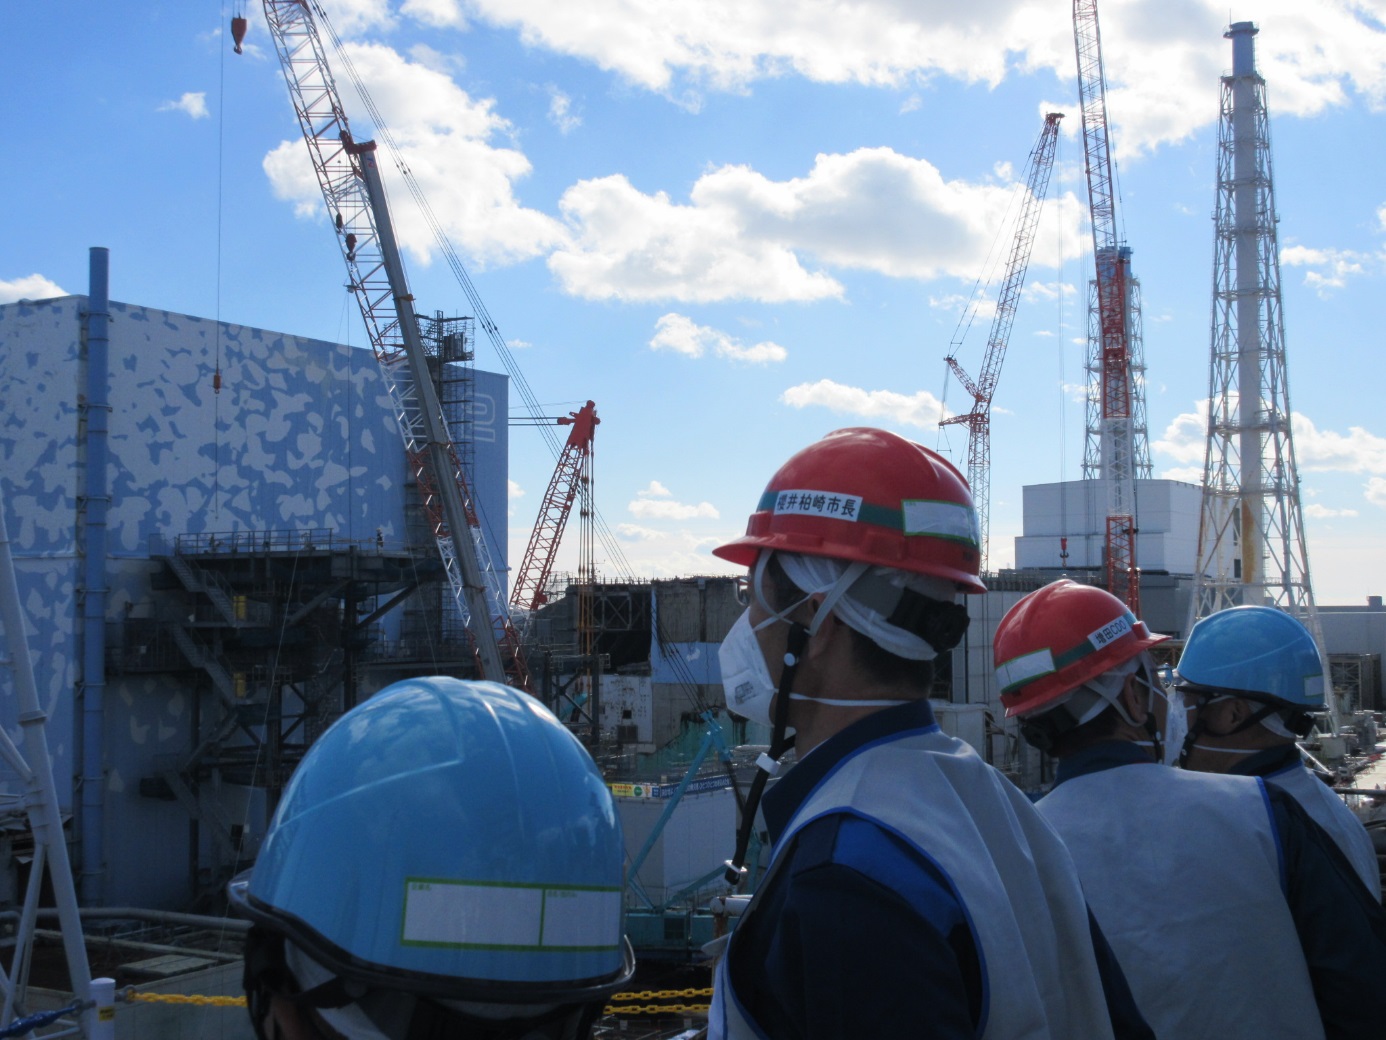 Starosta města Kašiwazaki navštívil areál elektrárny Fukušima I, snímek z jeho pobytu v blízkosti druhého bloku (zdroj TEPCO).